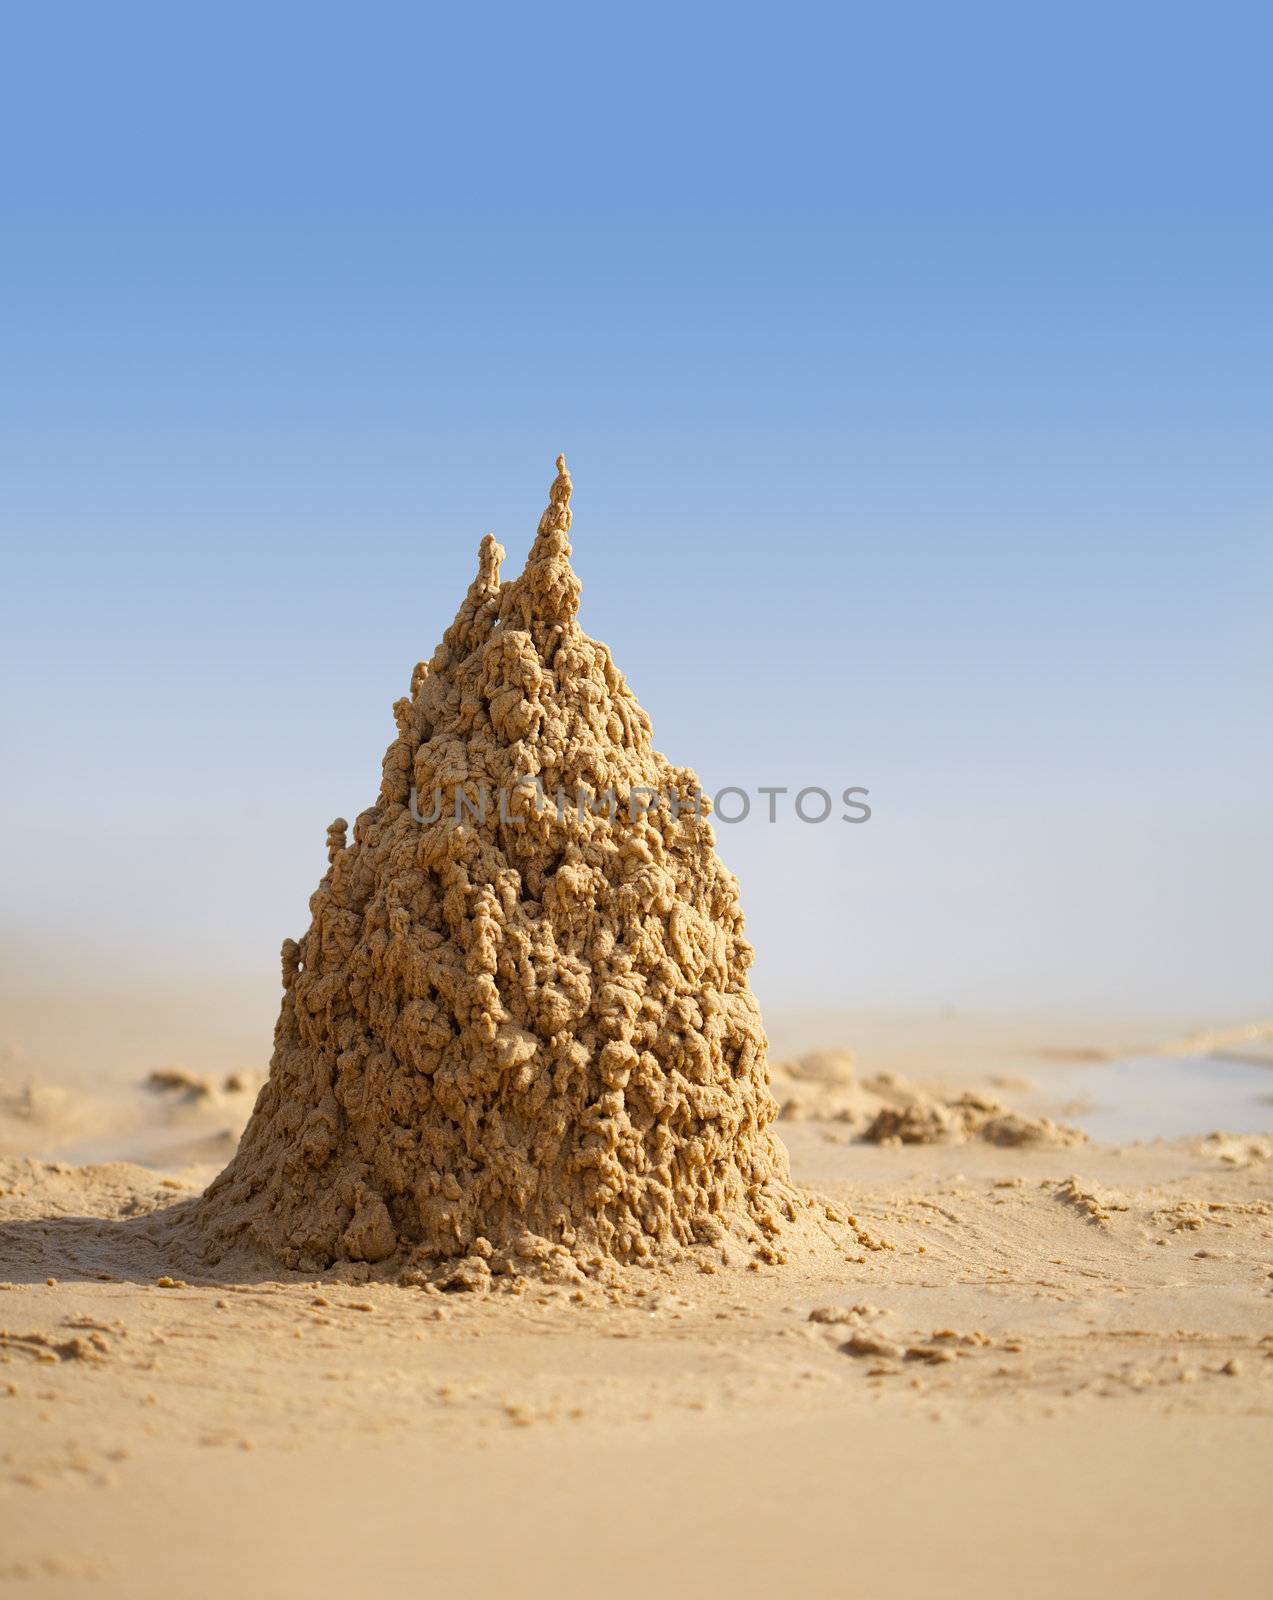 Surreal sand castle on a sunny tropical beach